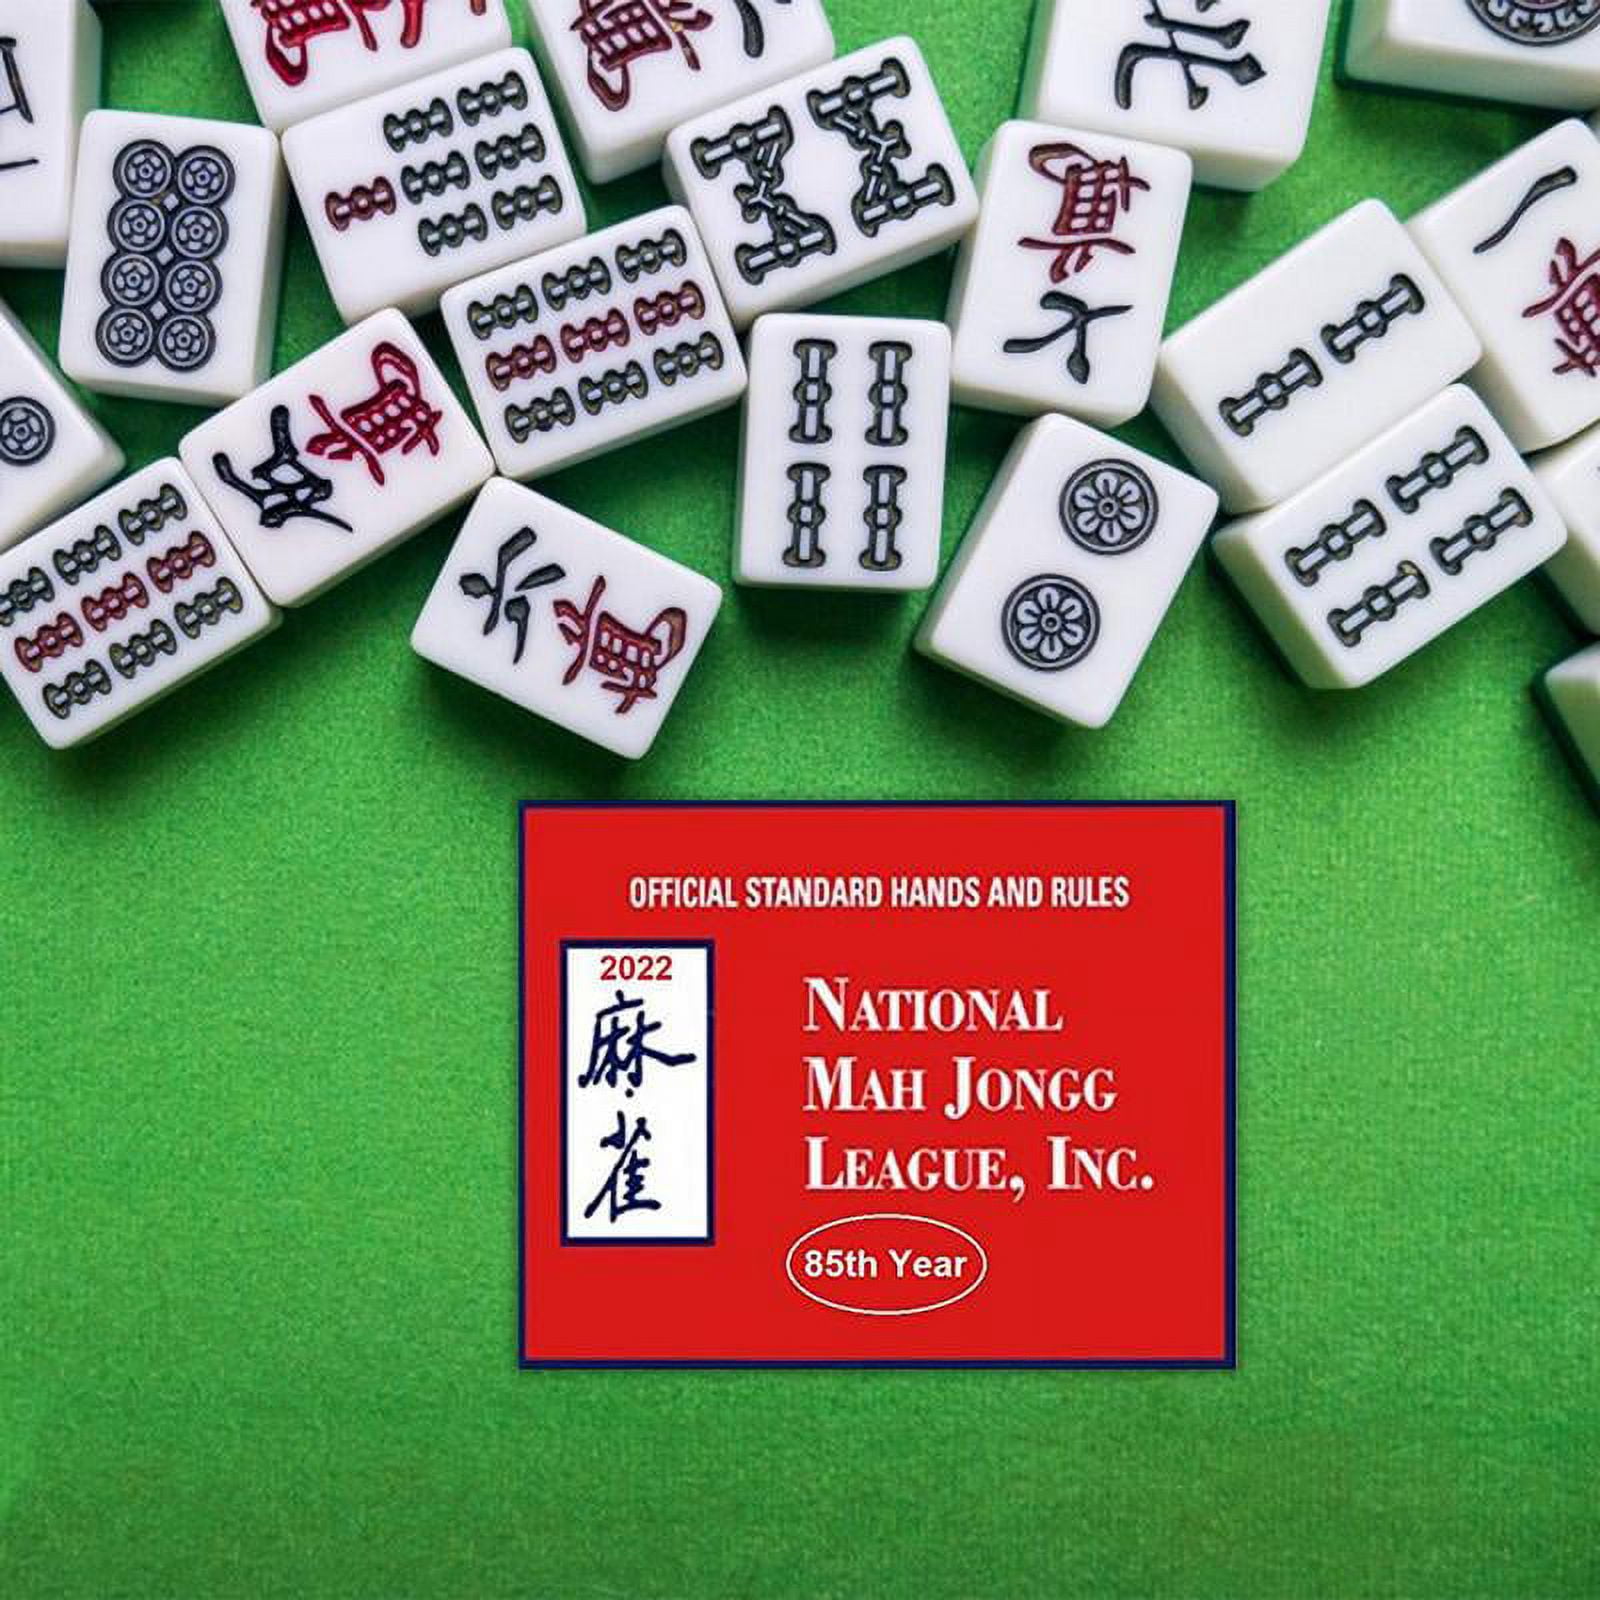 Mahjong, conjunto portátil mini 144 Mahjong com 2 reserva, jogo atividades  cerebrais tradicional, conjunto jogo mahjong chinês em miniatura para  viagens em família, tempo lazer